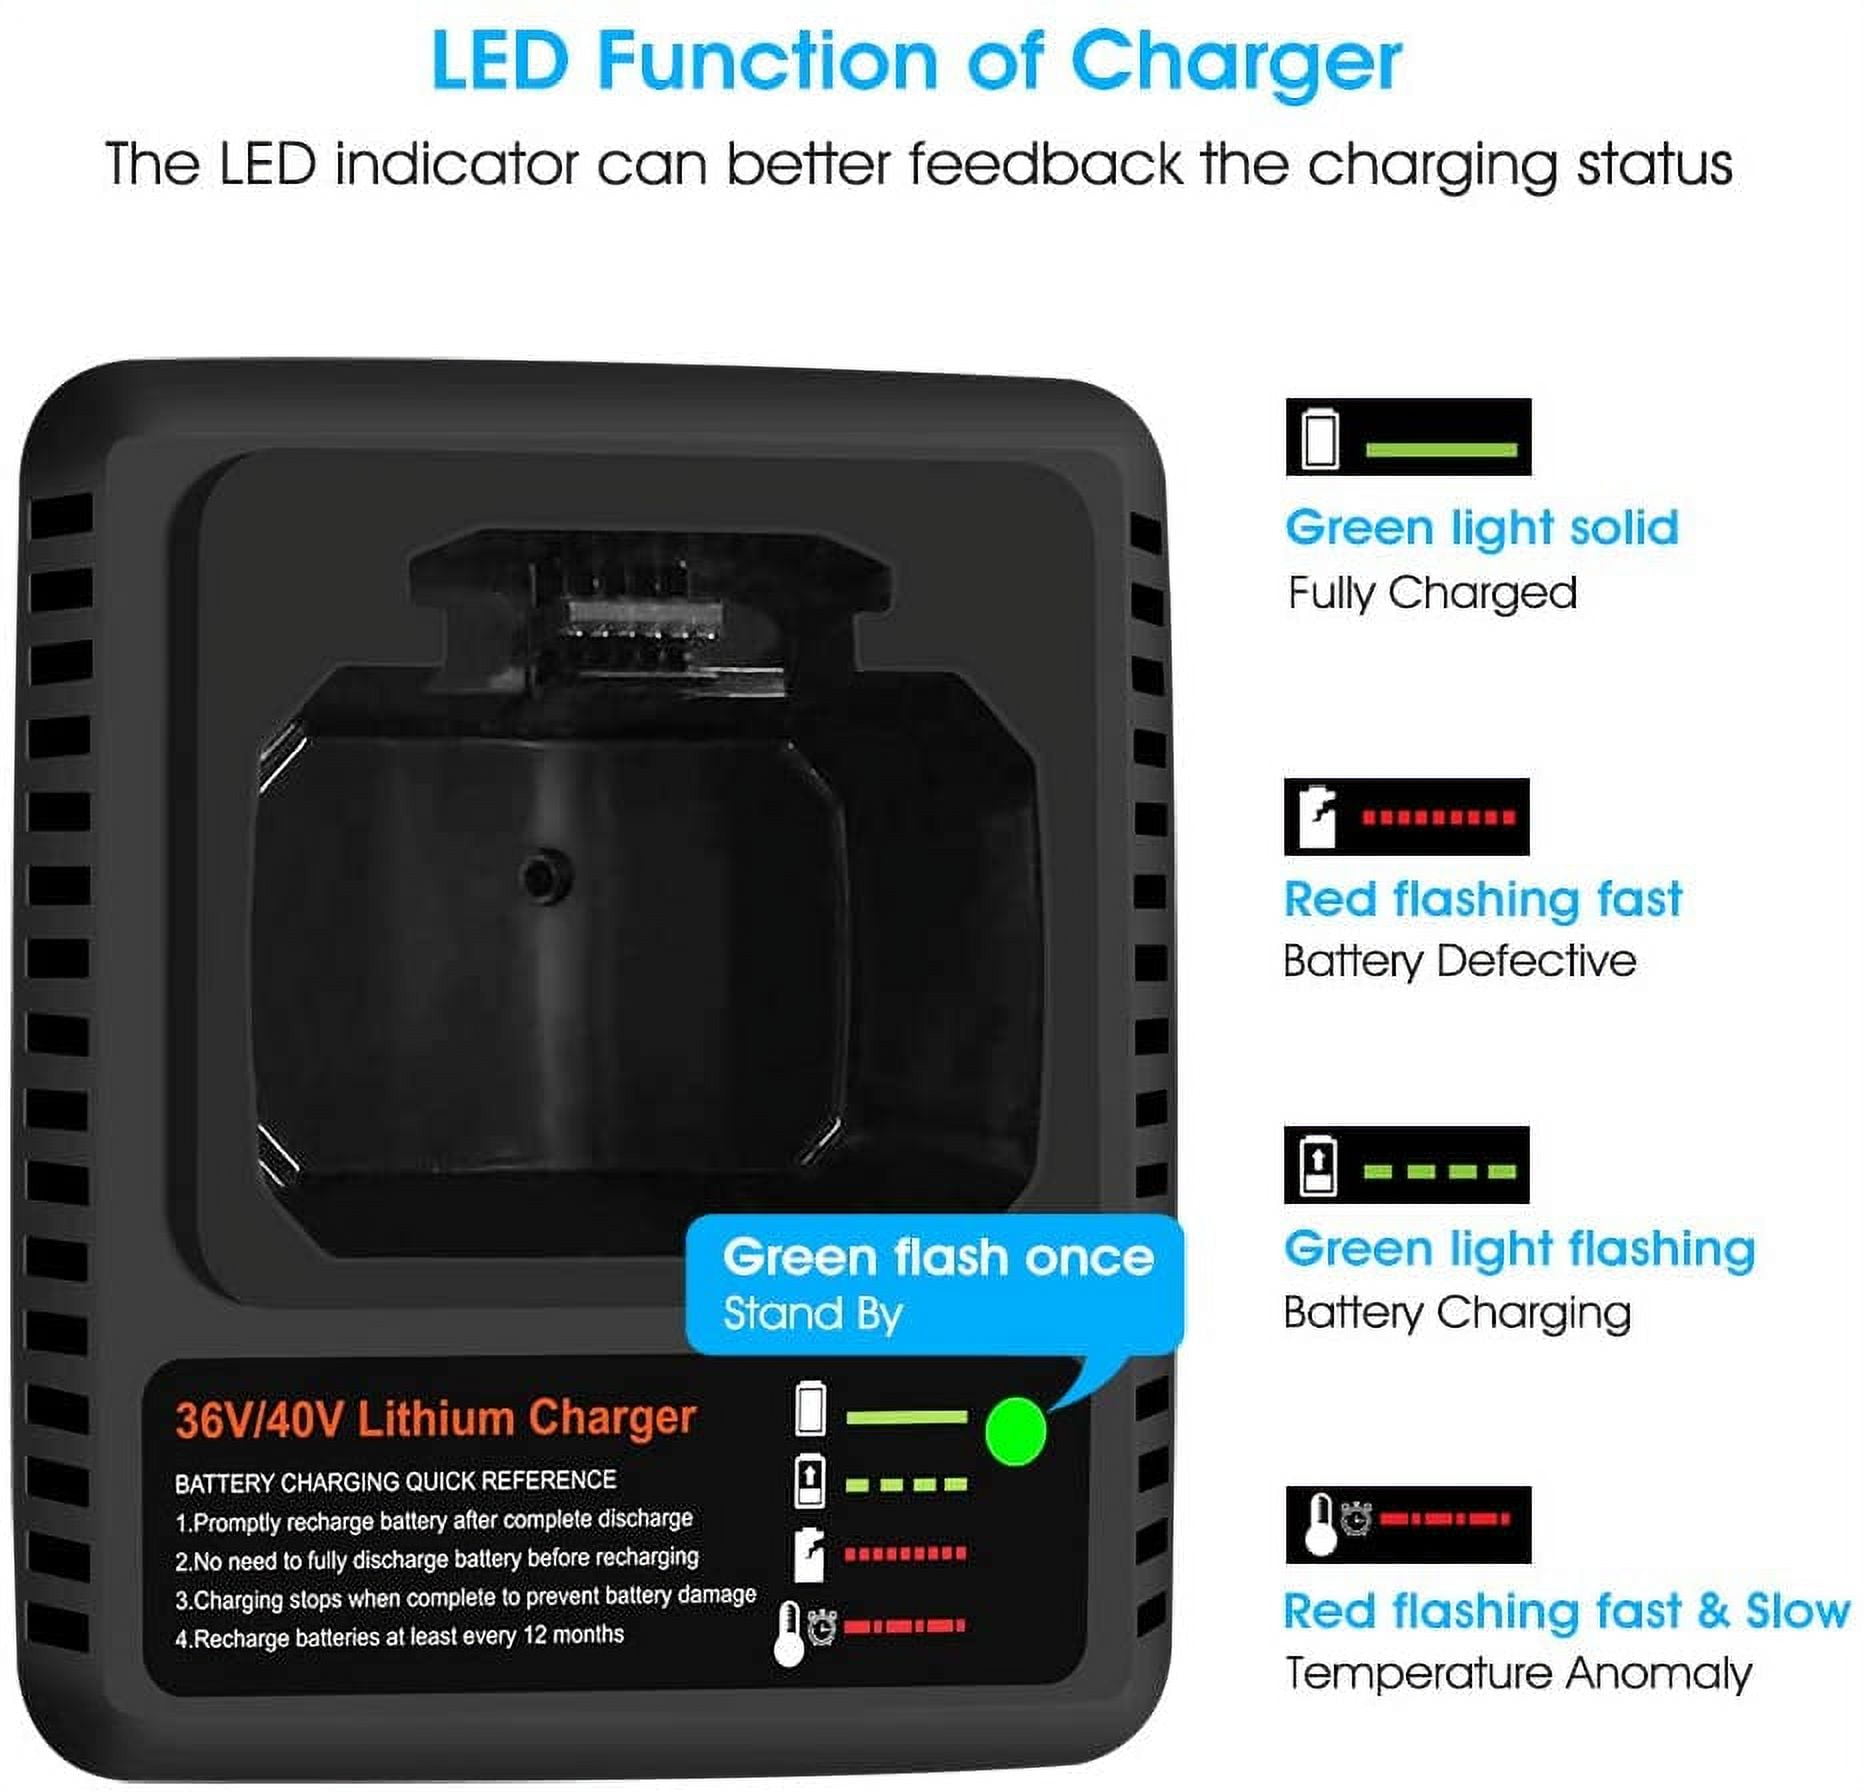 40v Lithium Battery + Charger for Black+Decker 40 Volt Max LBX2040 LBXR36  LSW36 - Measuring Tools & Sensors, Facebook Marketplace